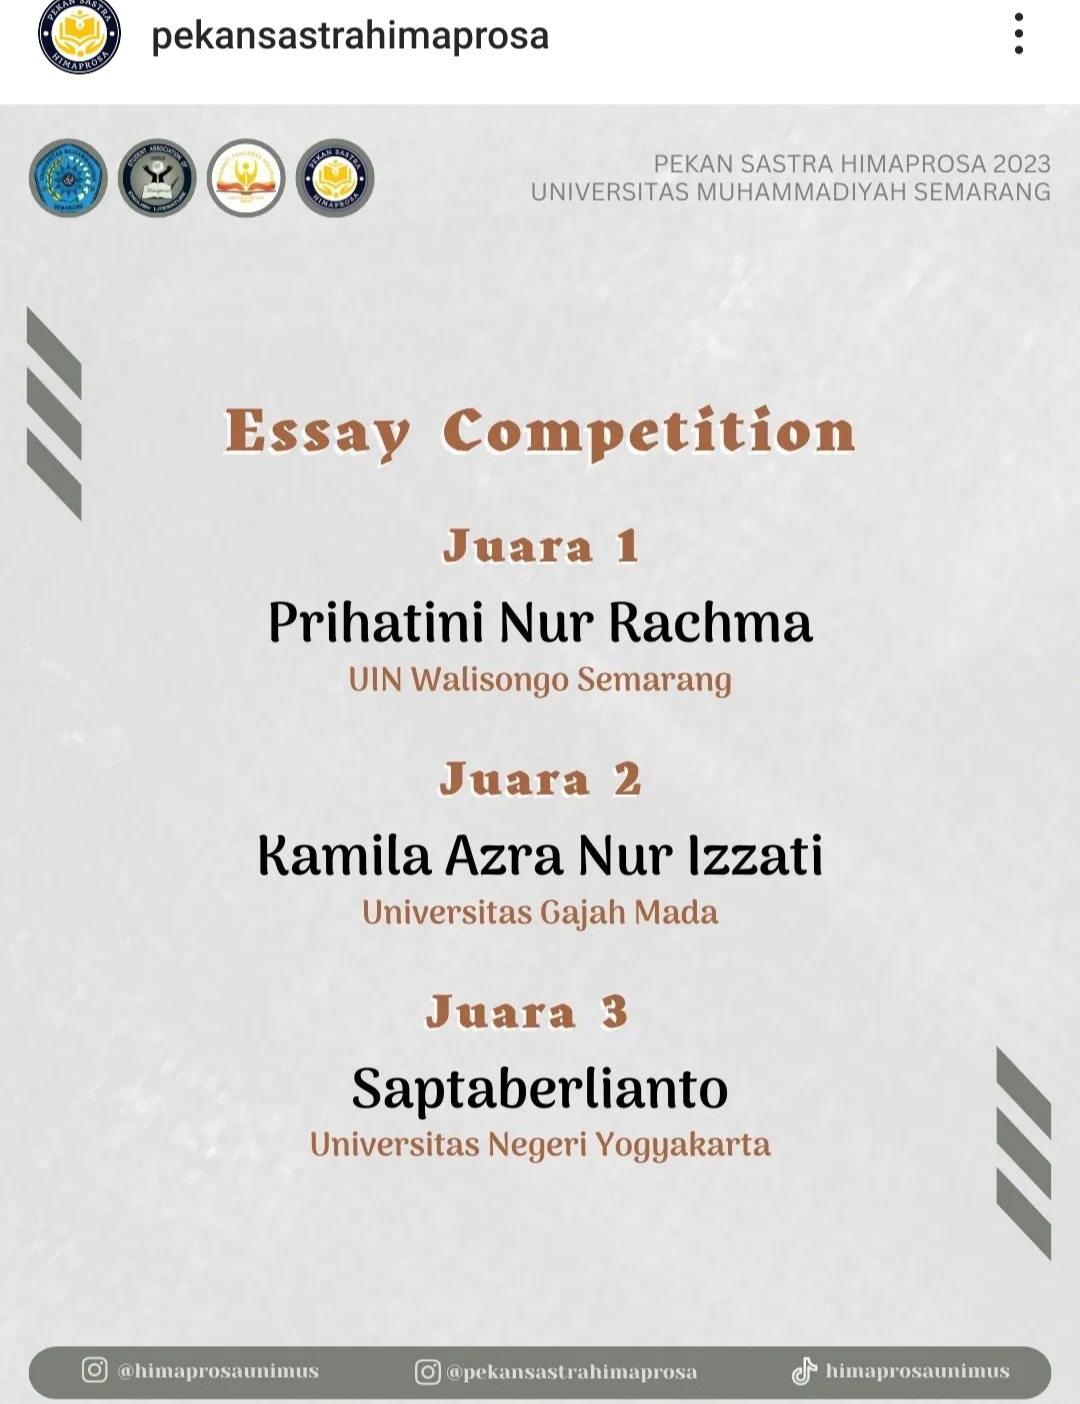 Foto English Essay Competition Pekan Sastra Himaprosa 2023 Universitas Muhammadiyah Semarang 